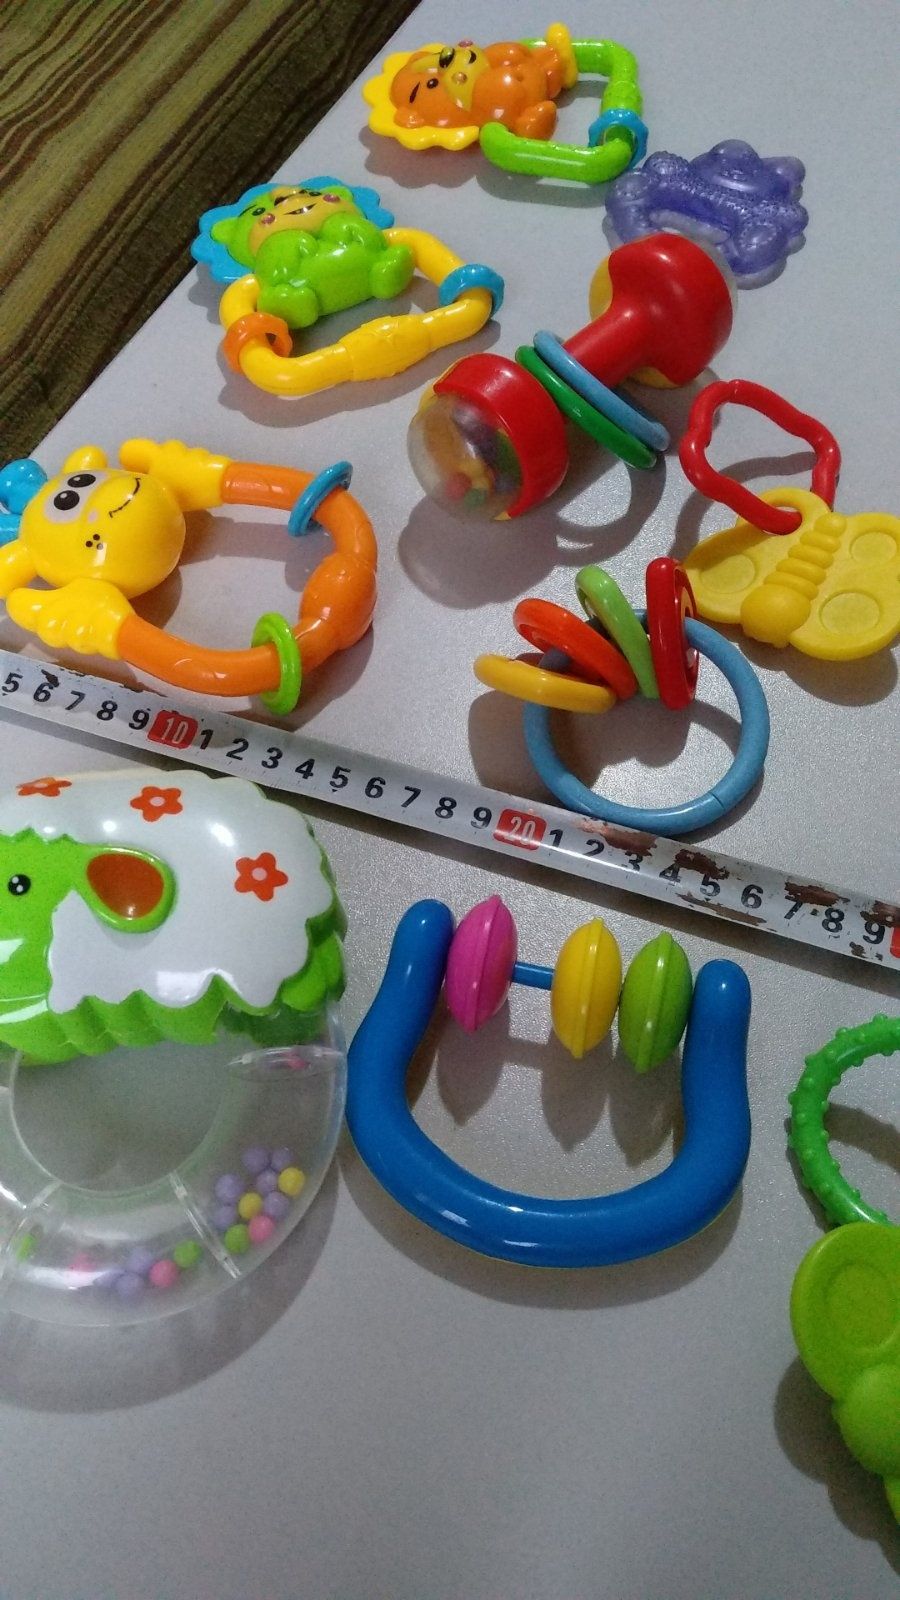 Якісні сміковські іграшки для самих маленьких дітей.